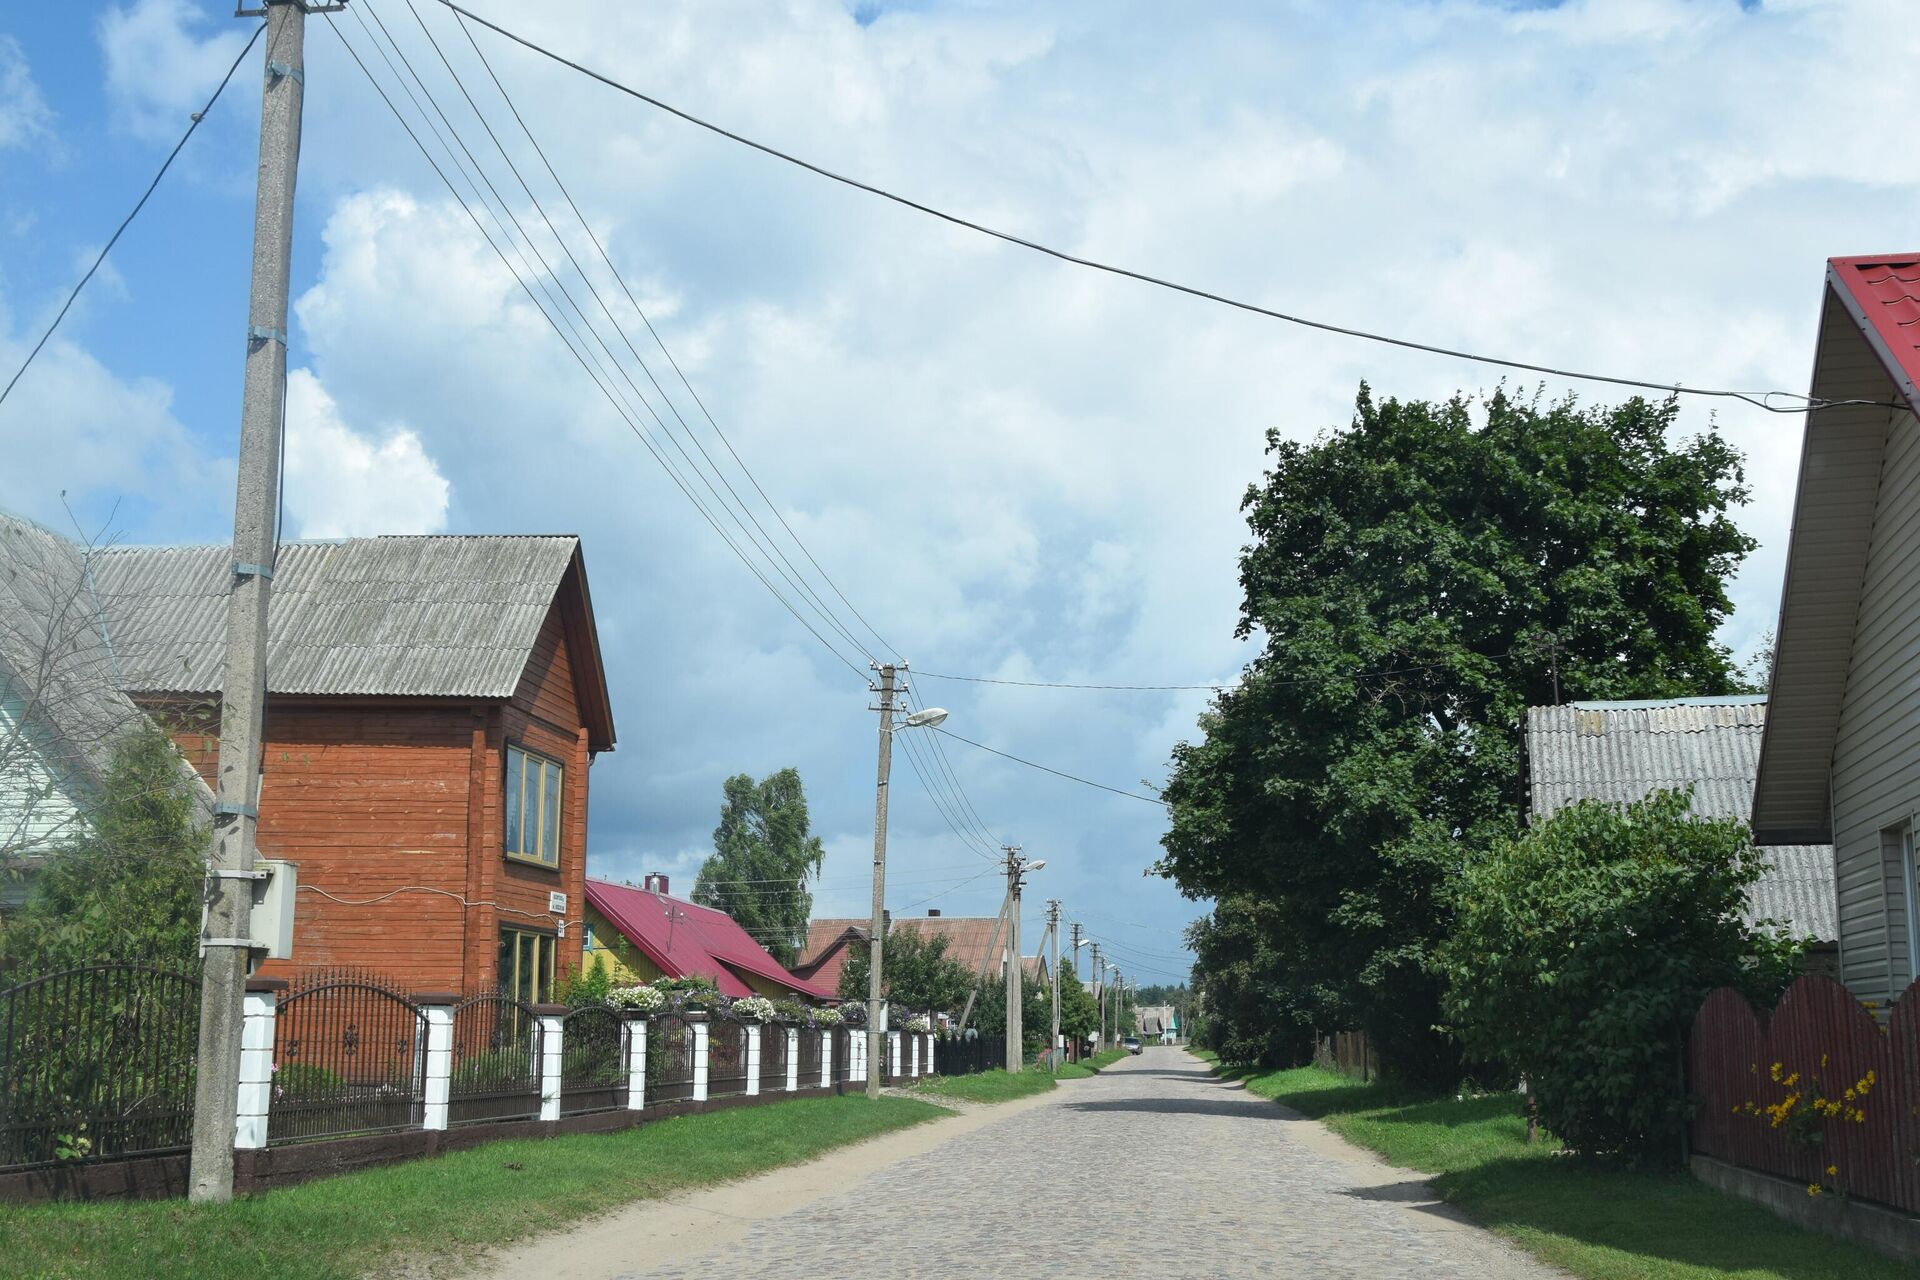 Улица в деревне Руднинкай в Шальчининкайском районе Литвы - Sputnik Латвия, 1920, 30.08.2021